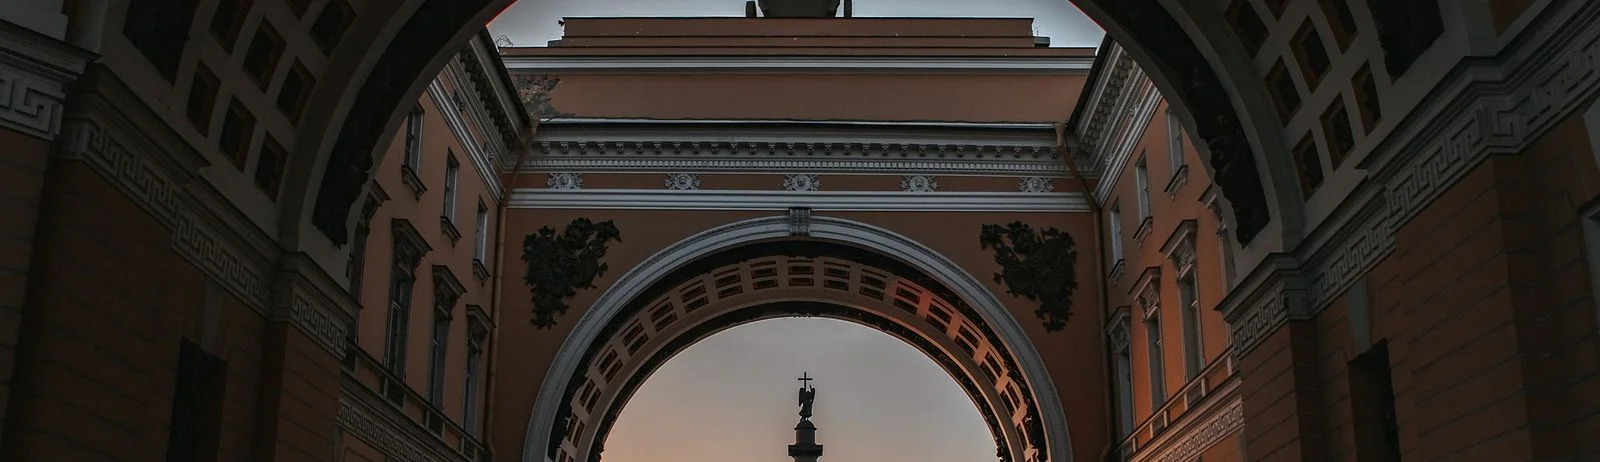 Туры и экскурсии в Санкт-Петербург